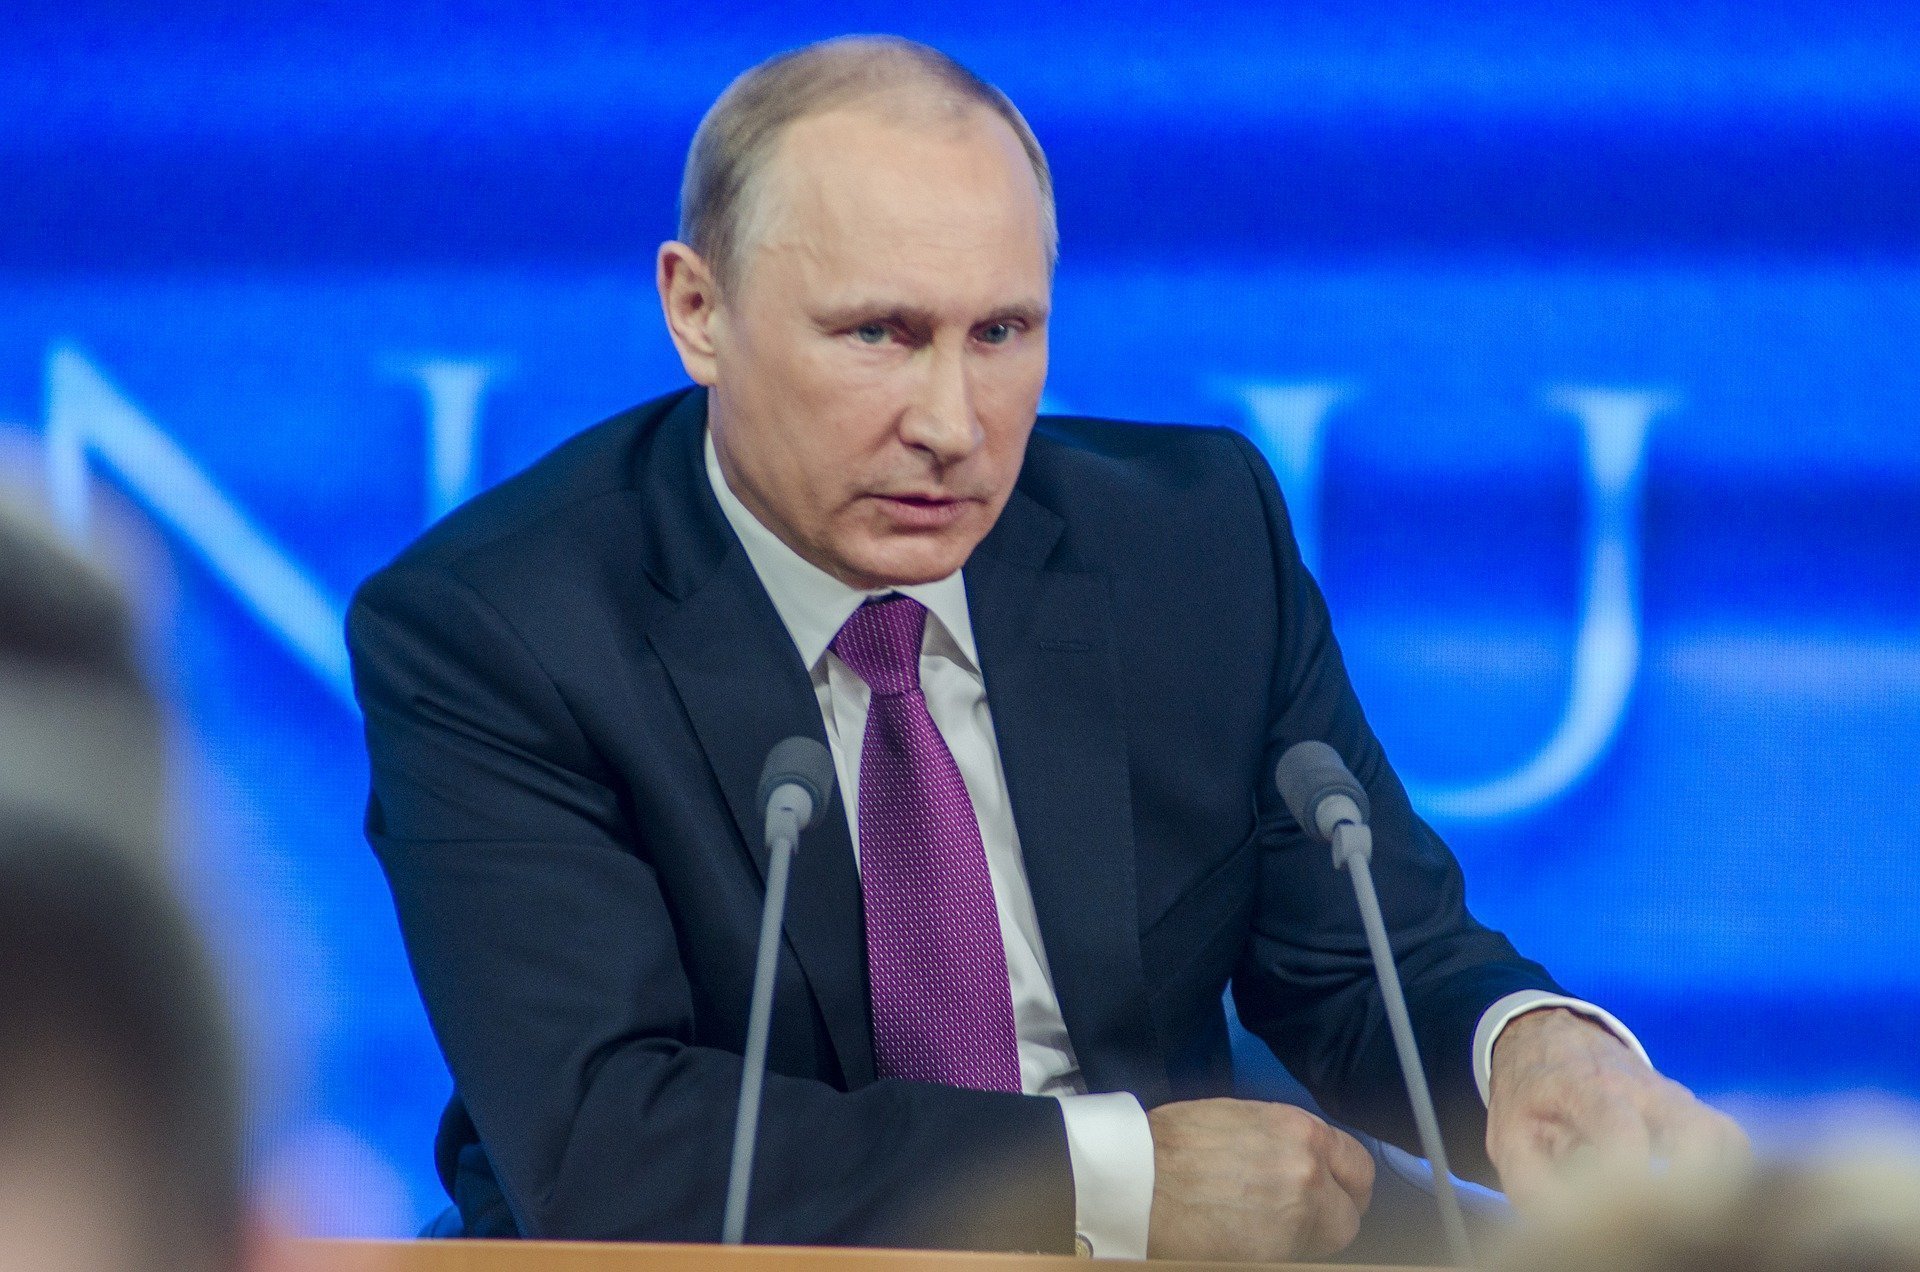 Putin, victima unui Fake News? Kremlinul dezminte zvonul că președintele rus ar fi bolnav și ar urma să demisioneze